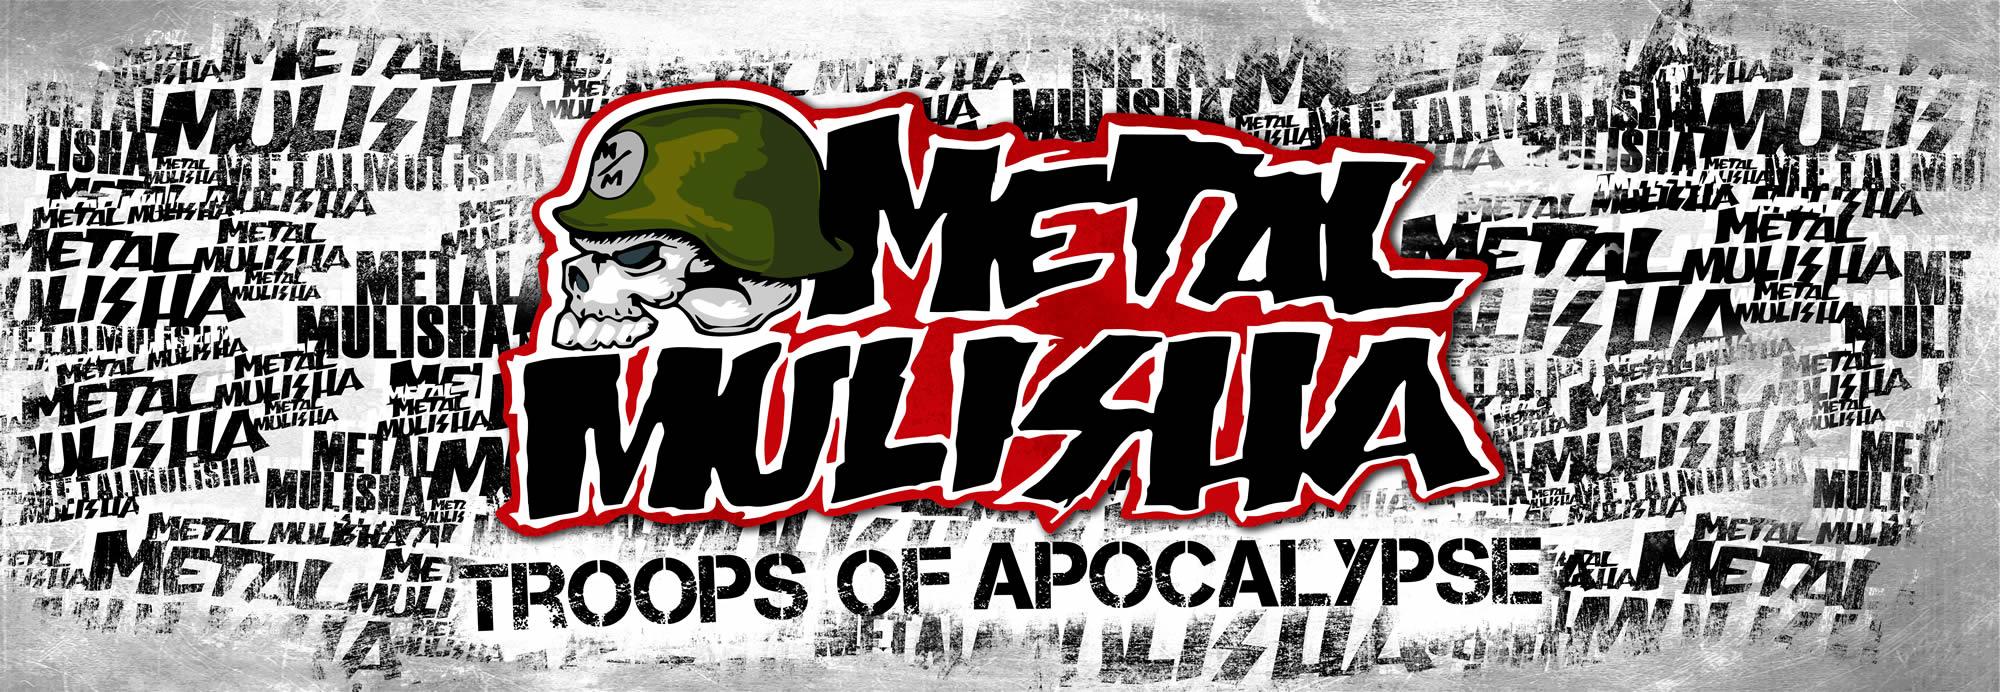 Logos Metal Mulisha